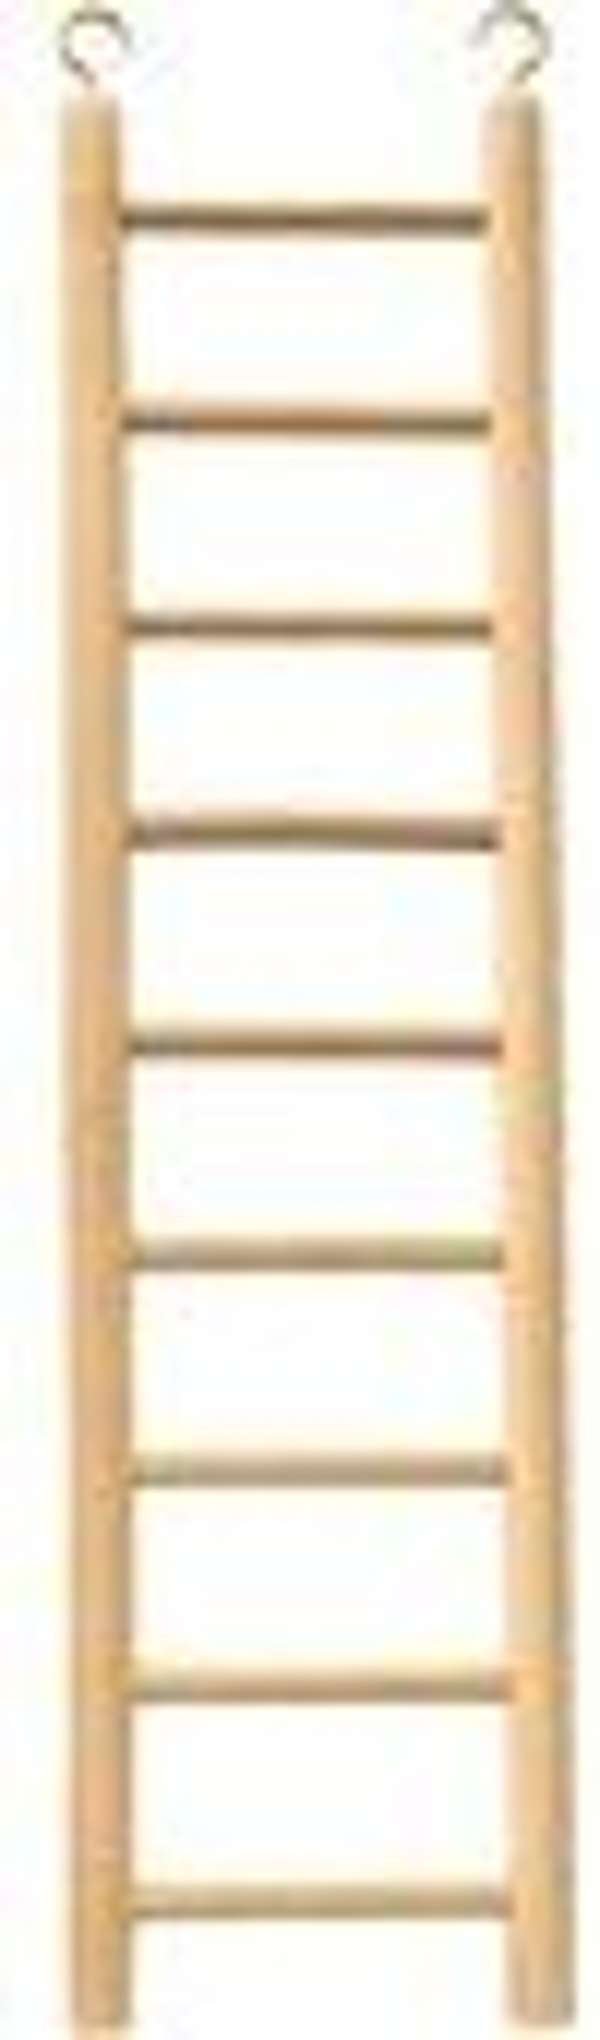 Beaks Wooden Ladder